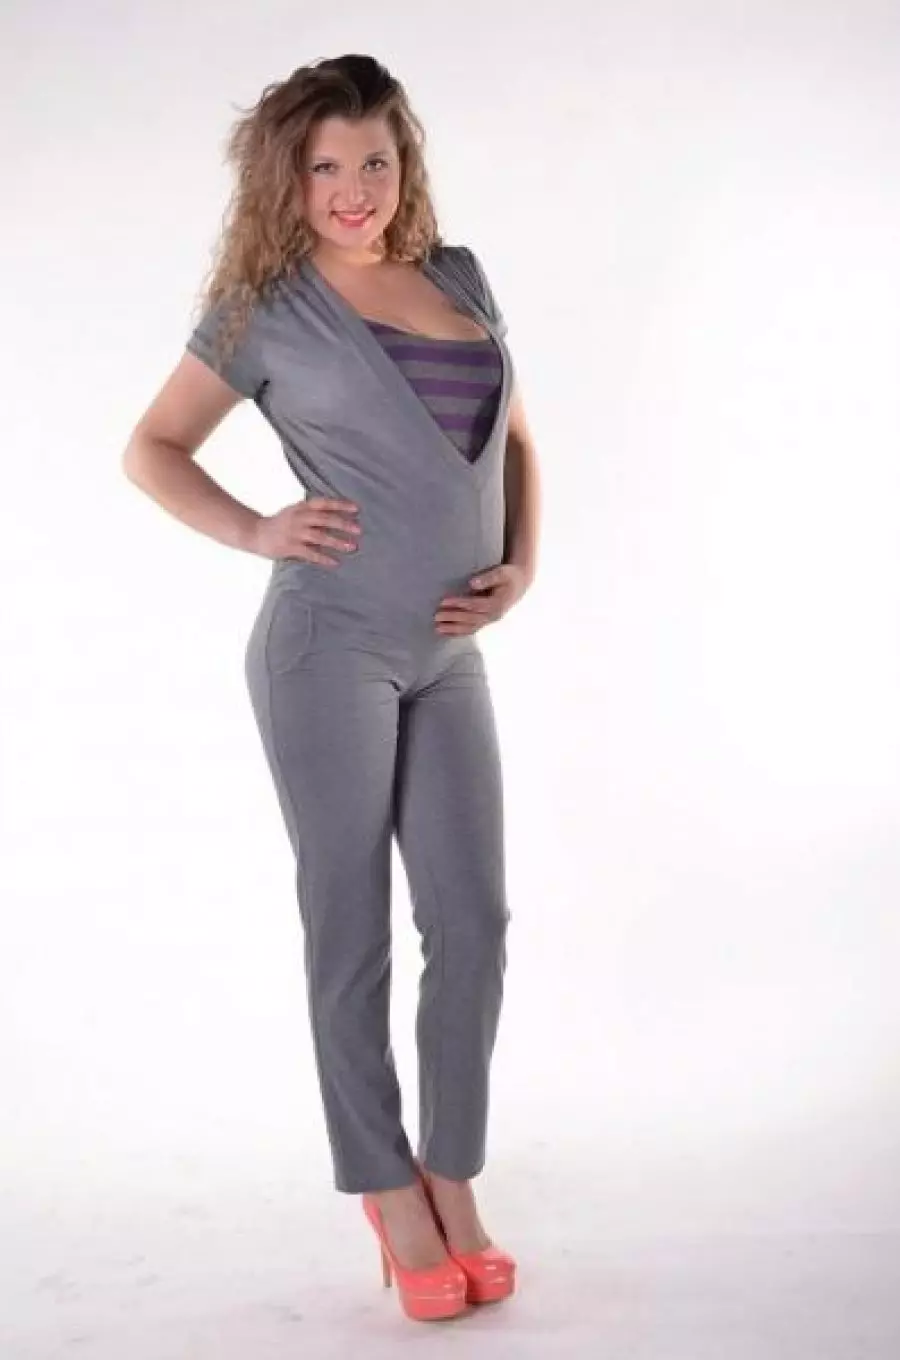 गर्भवती महिलाओं के लिए जंपसूट (7 9 फोटो): गर्म, मखमल और पतलून jumpsuit, स्कर्ट Jumpsuit, अर्द्ध चौग़ा 13457_70